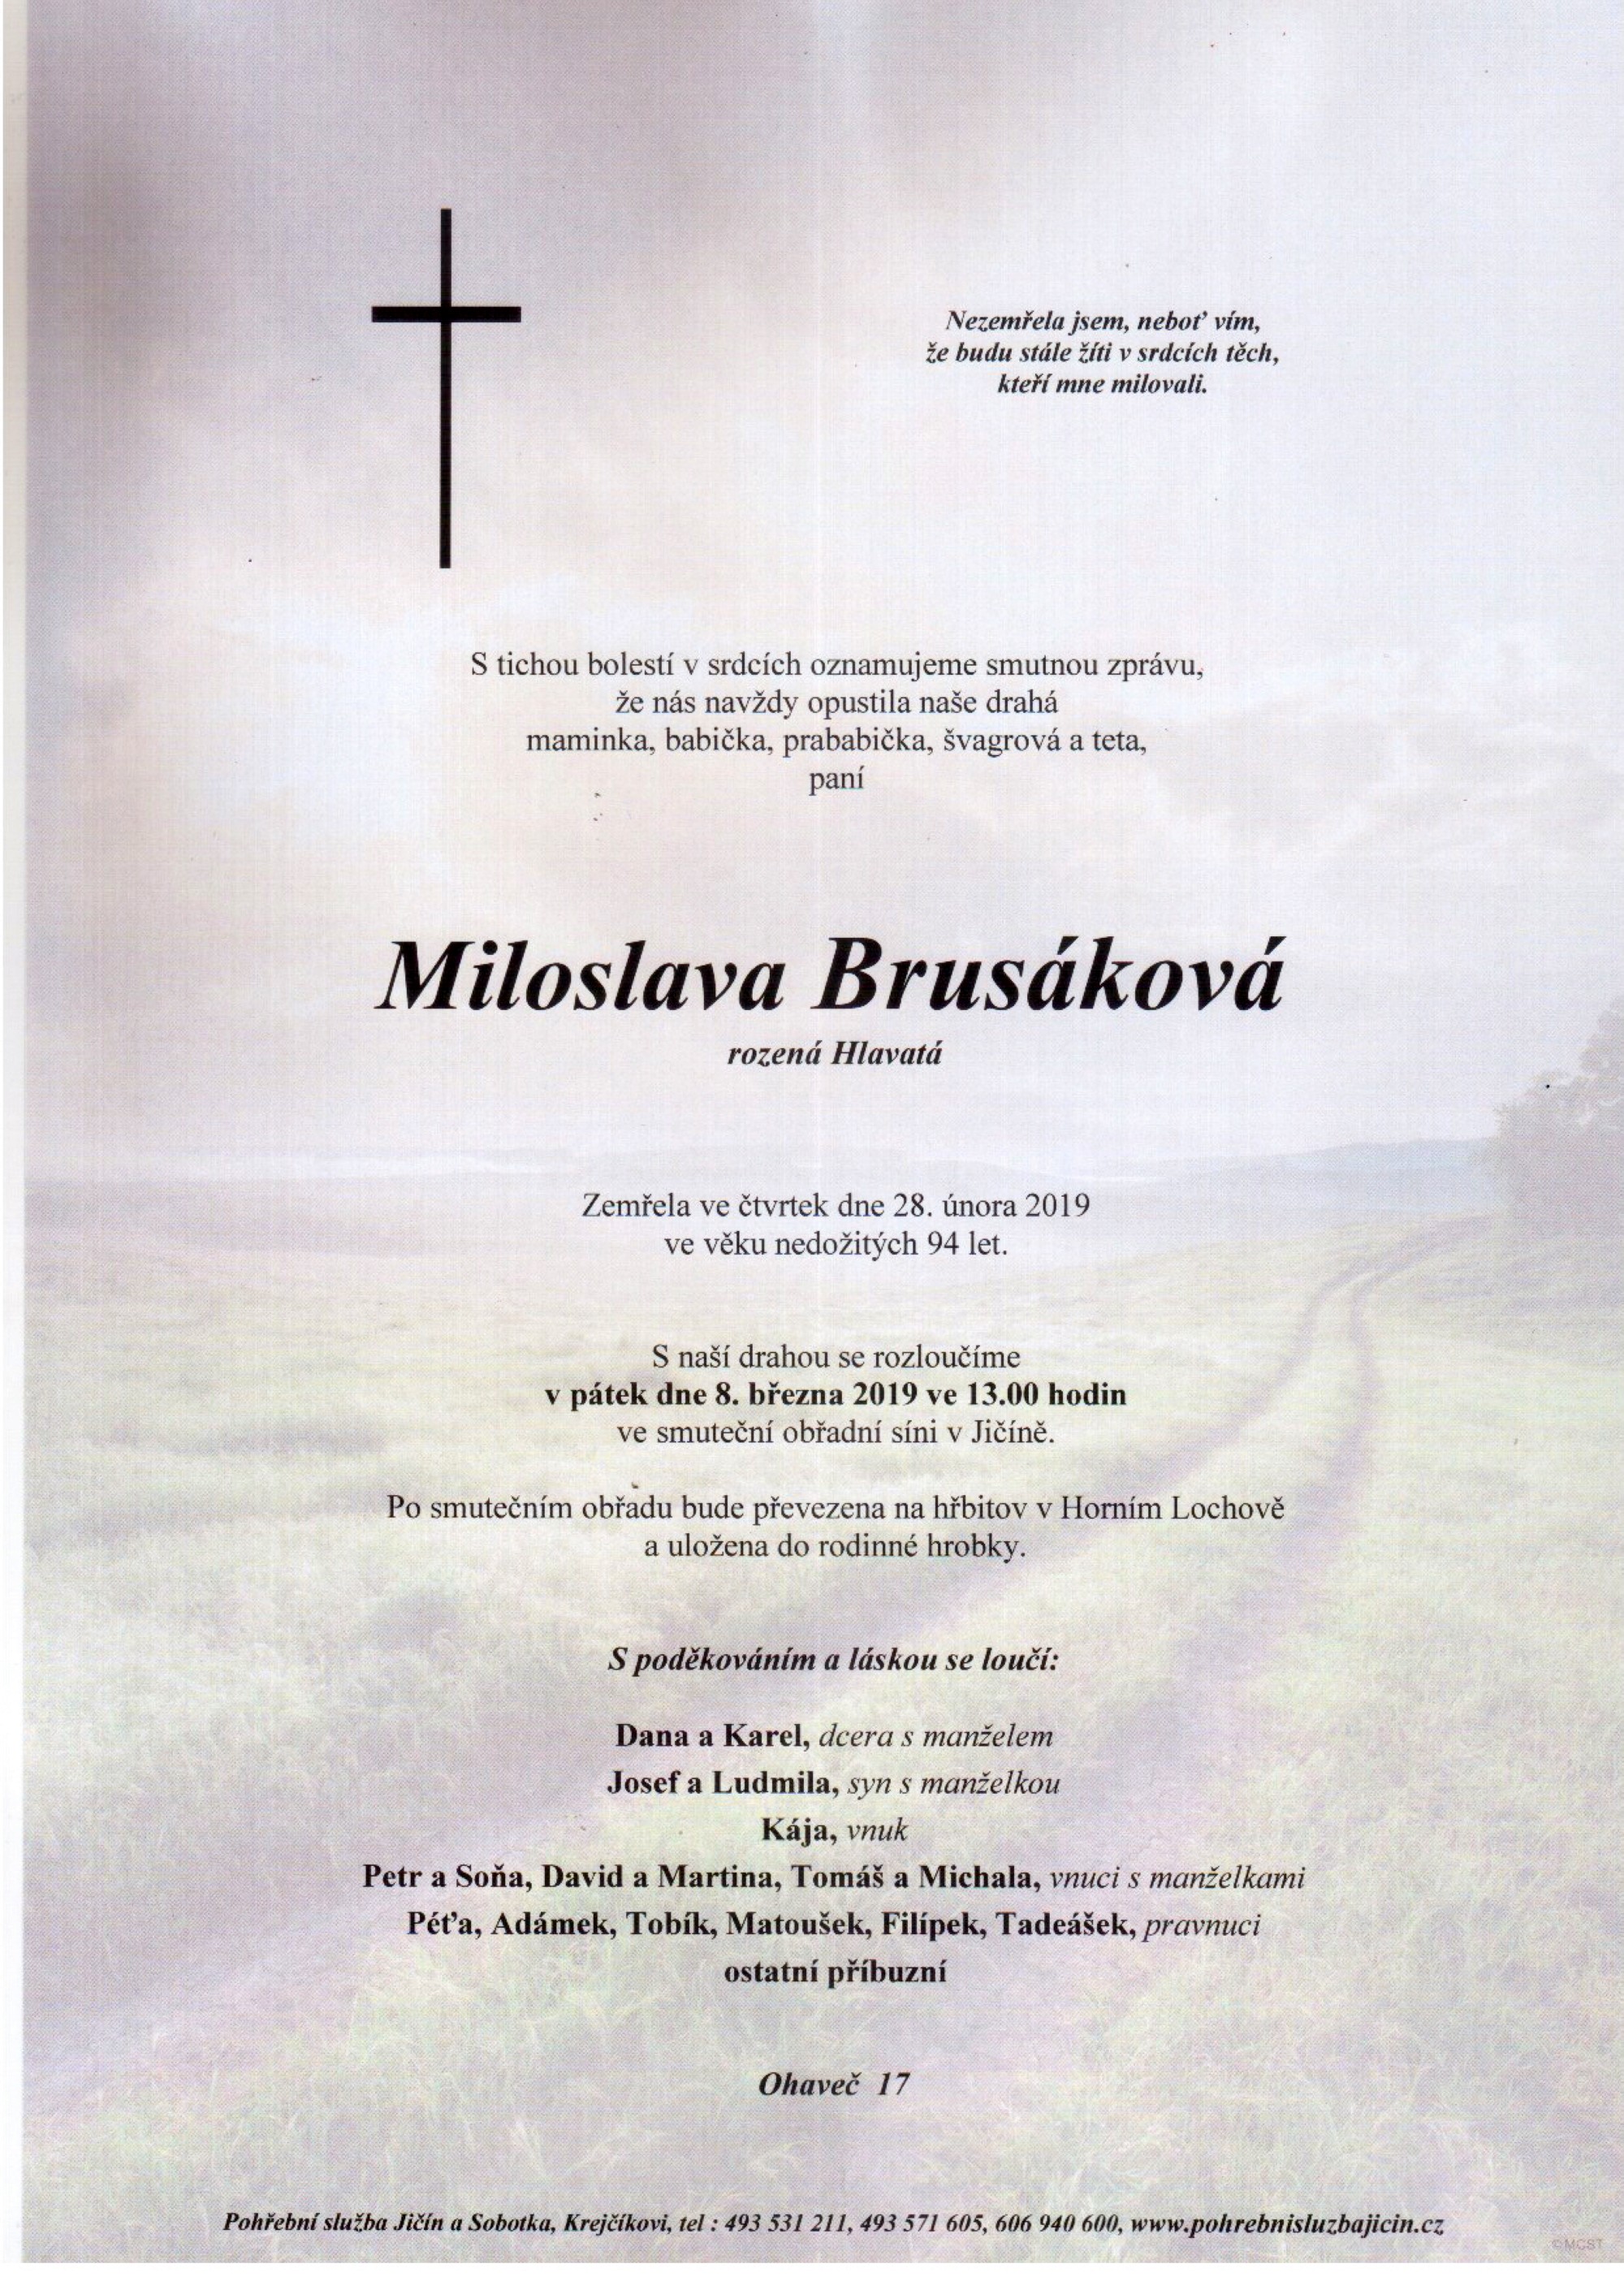 Miloslava Brusáková